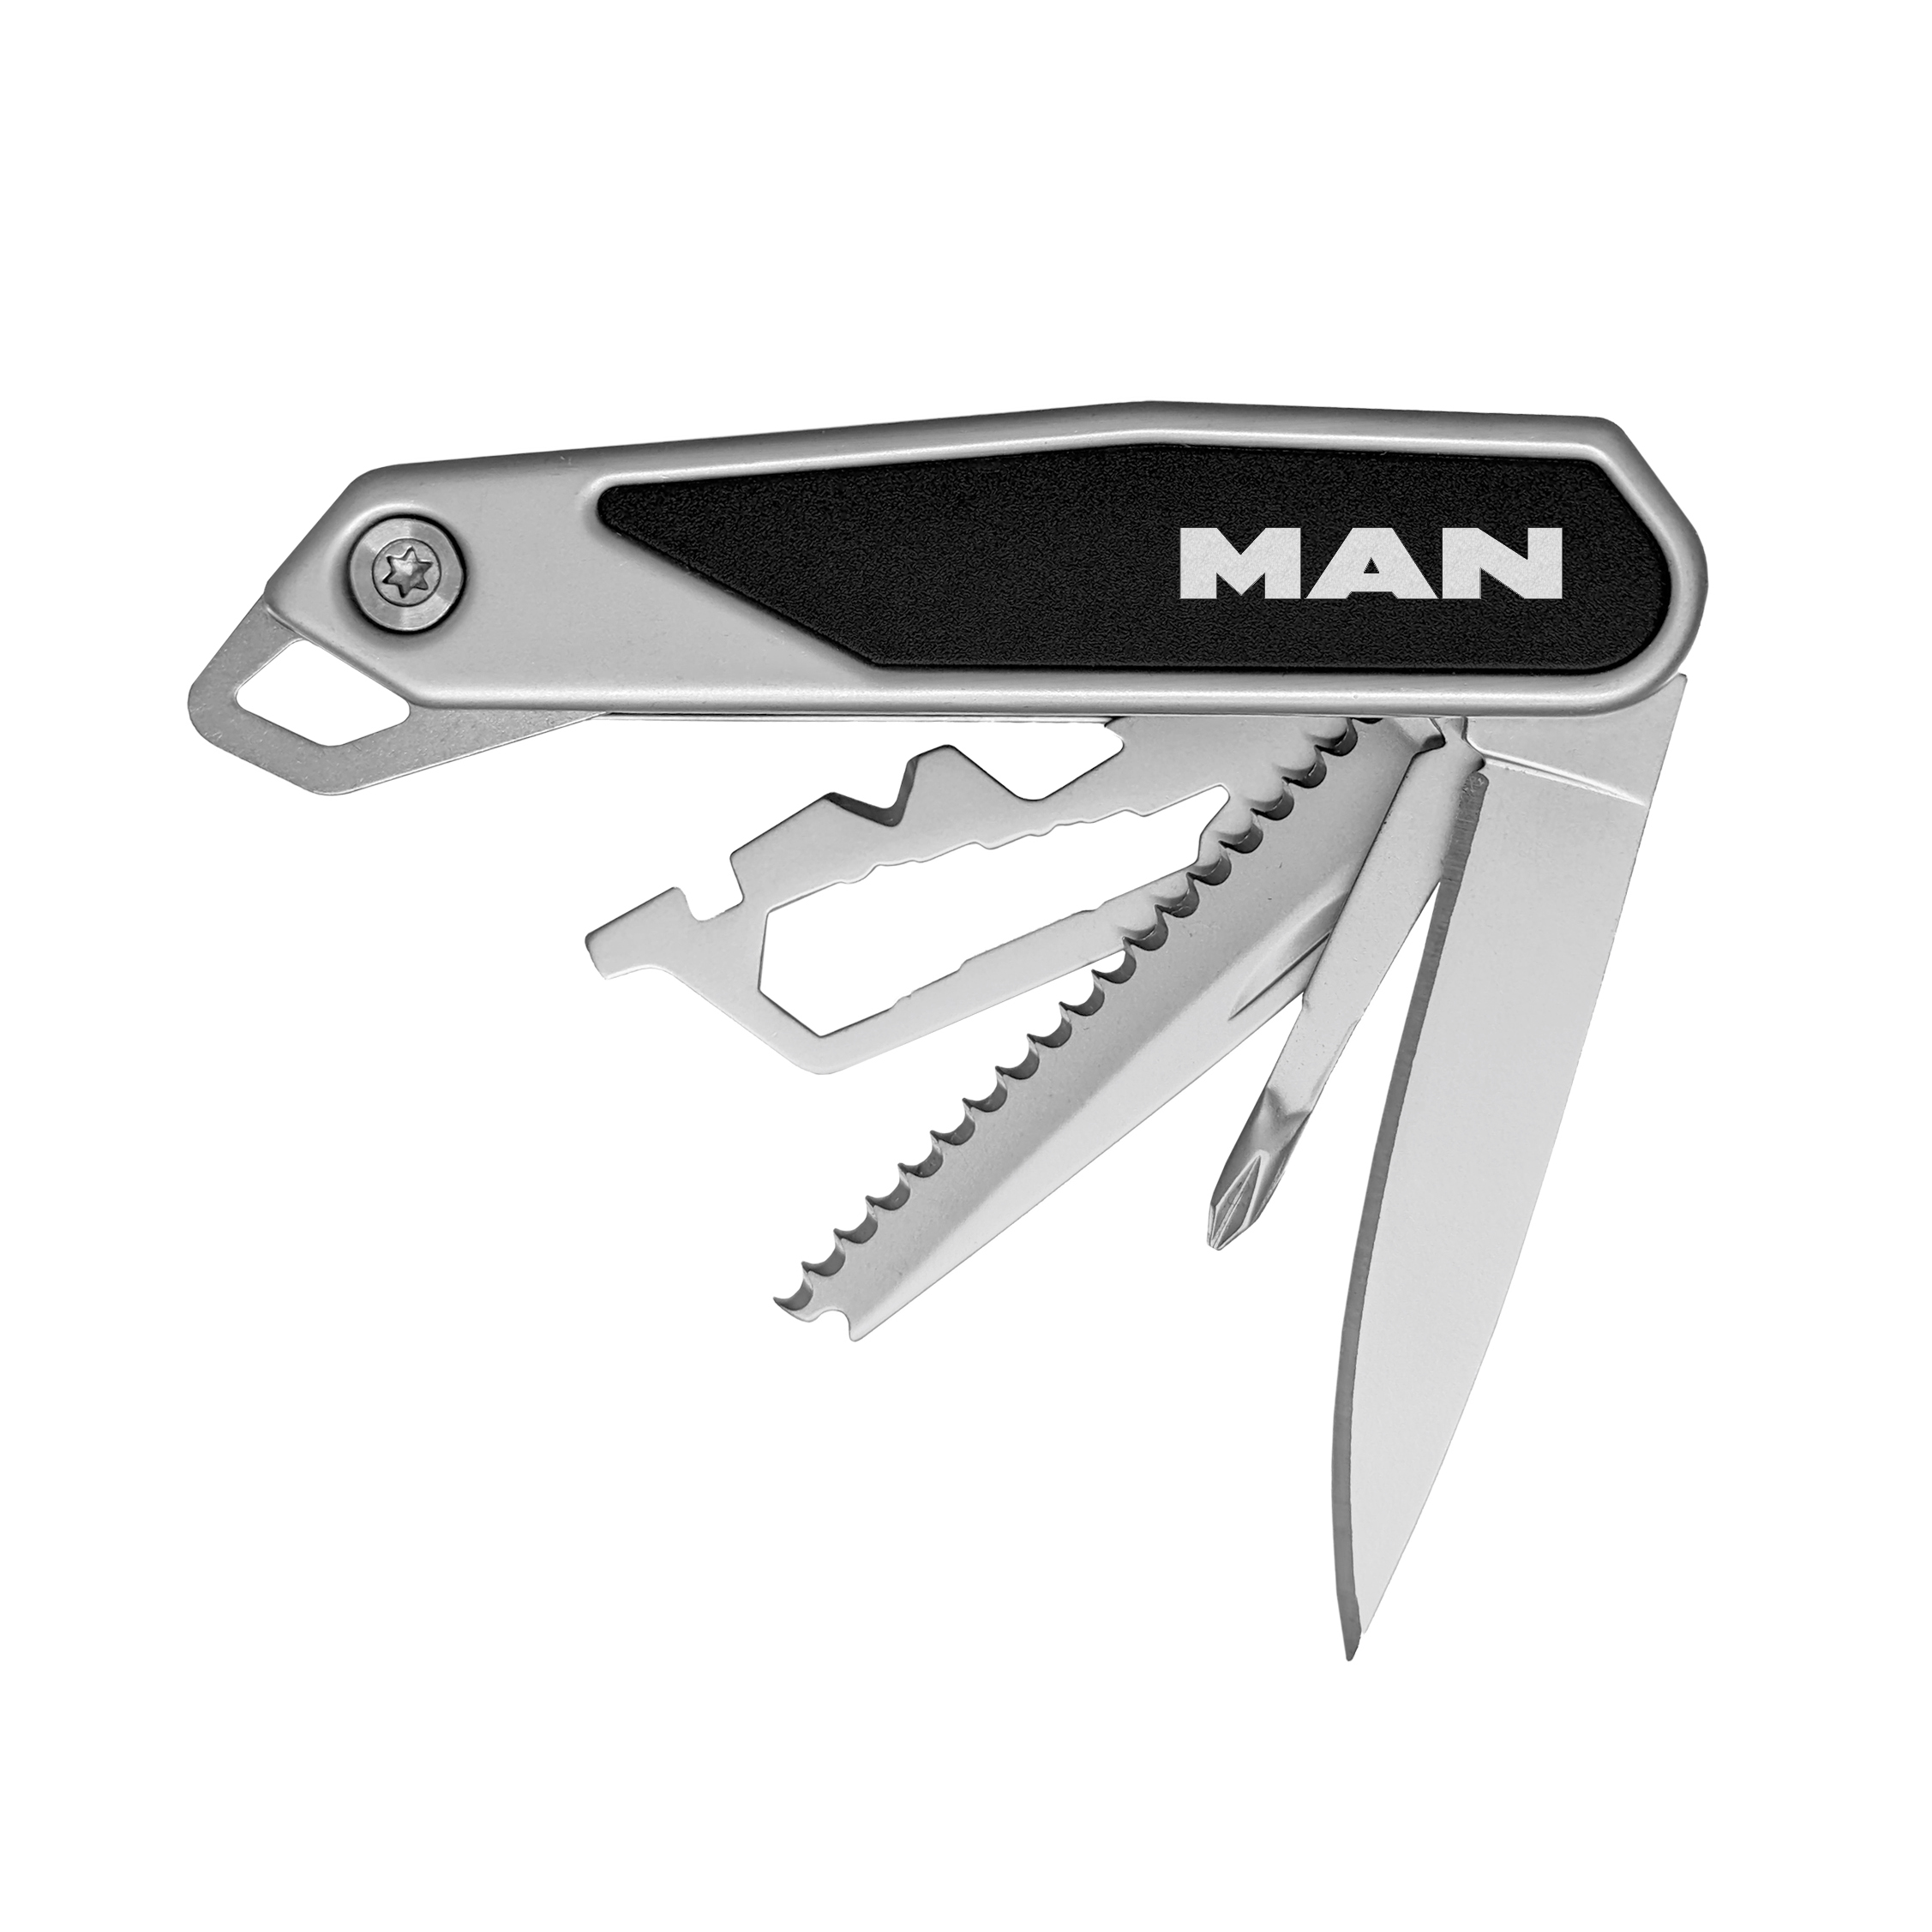 MAN PRO knife 15+